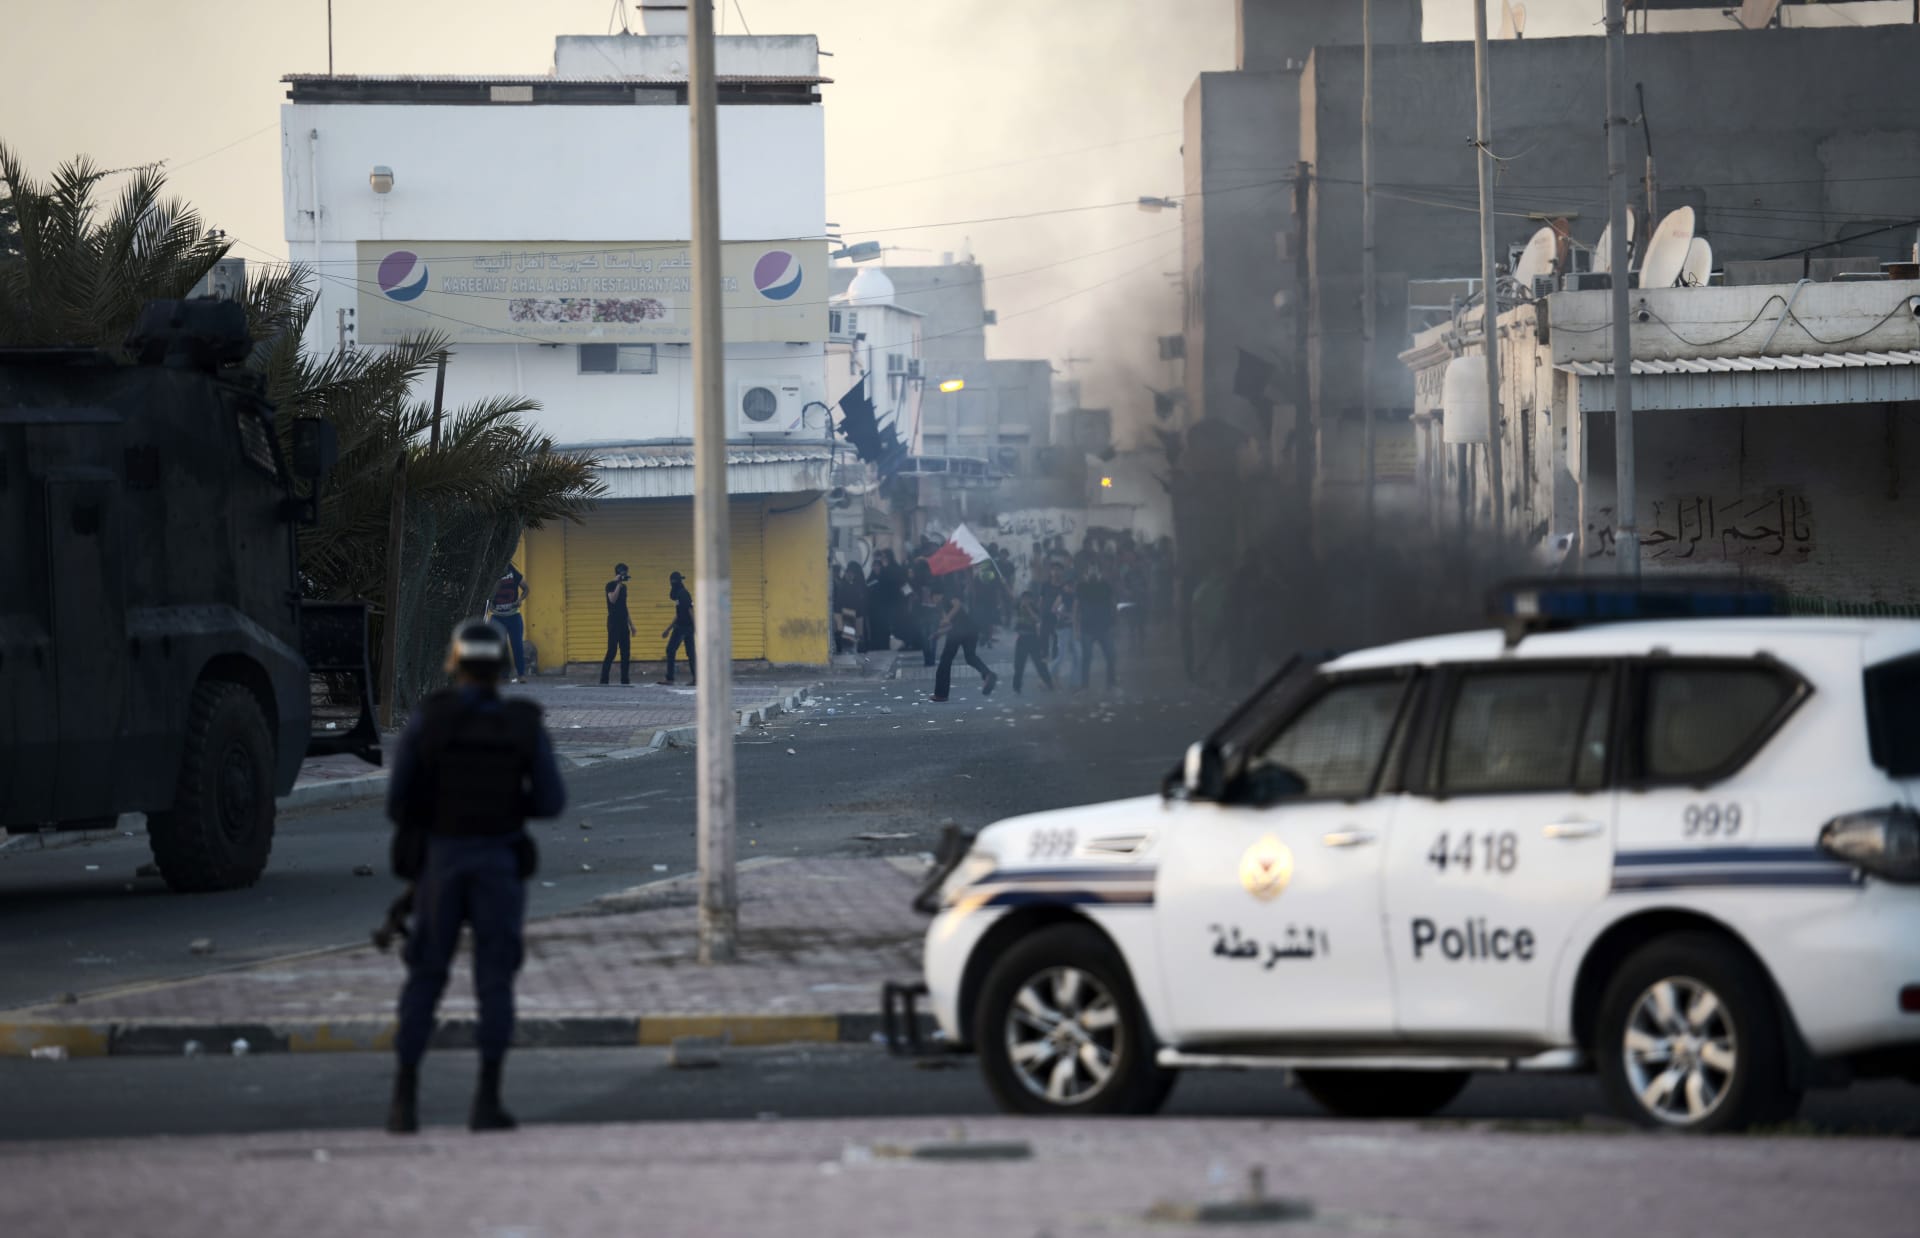 الداخلية البحرينية: مقتل شرطي وإصابة اثنين إثر هجوم بالقنابل الحارقة والزيداني يُؤكد دعم دول مجلس التعاون للبحرين